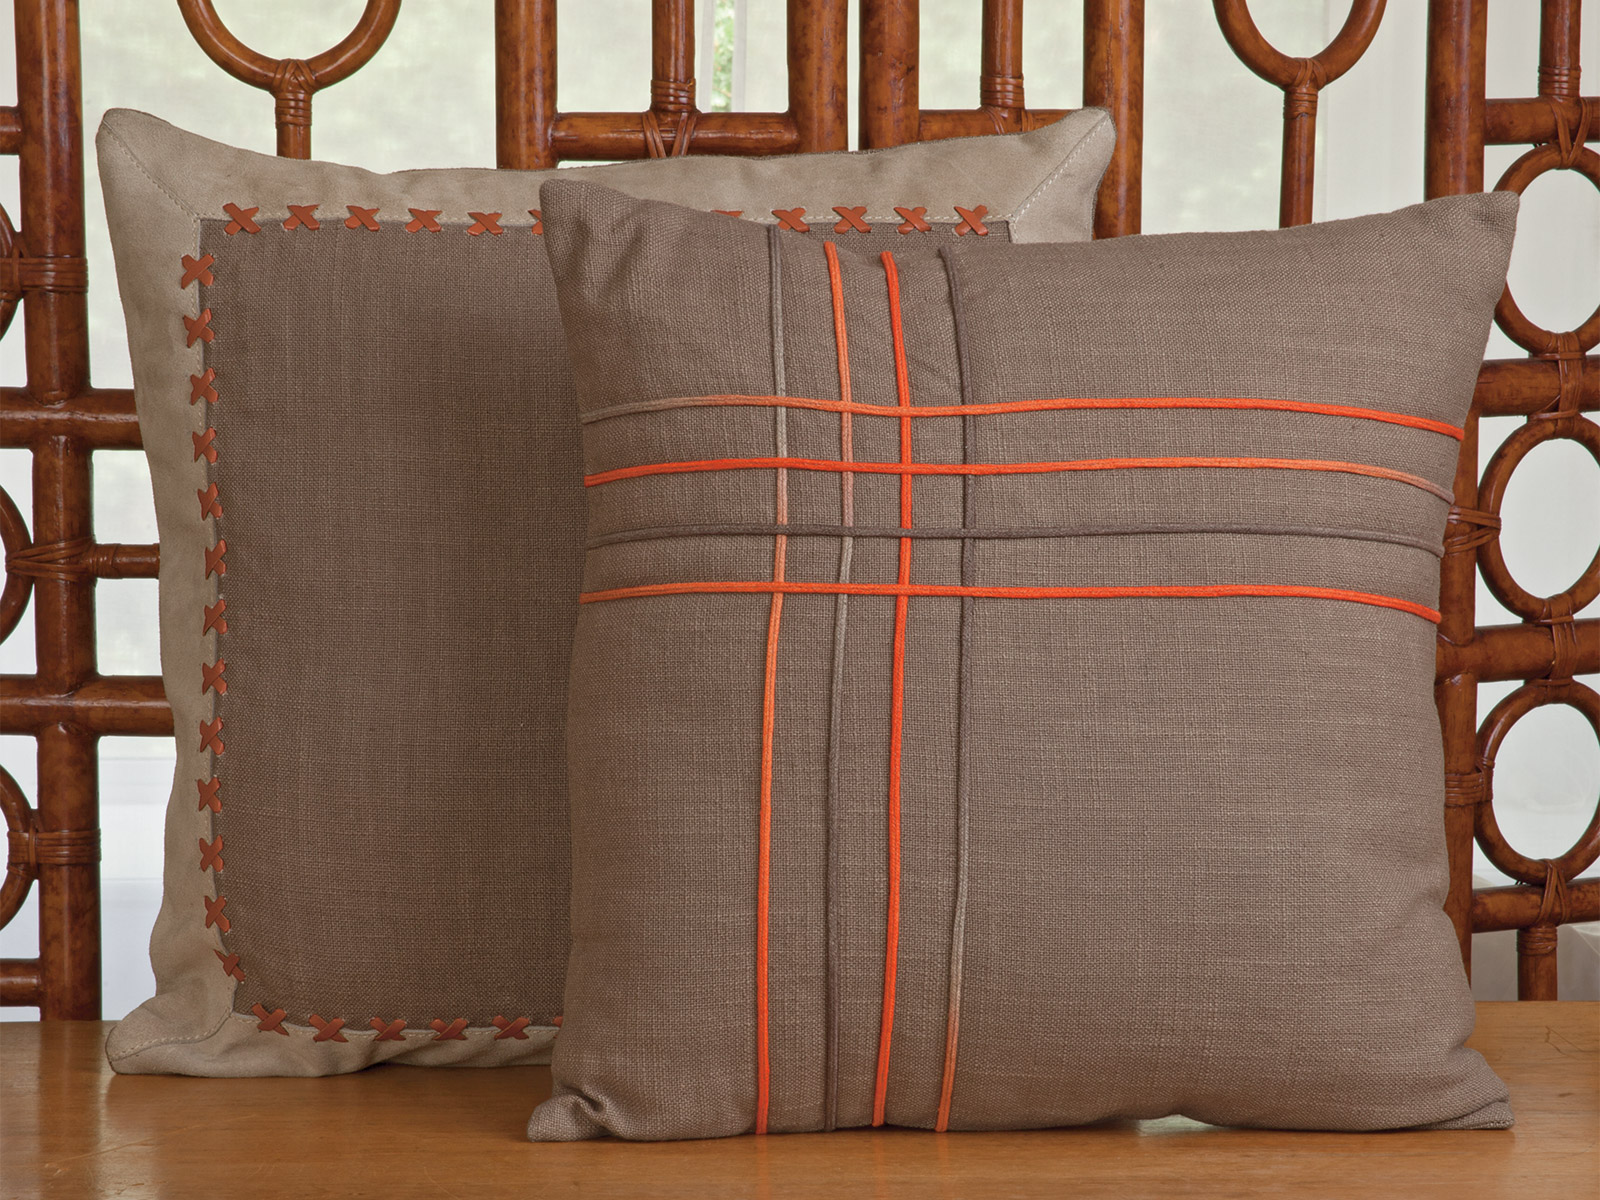 Nuance & Barrington Court Decorative Pillows Image